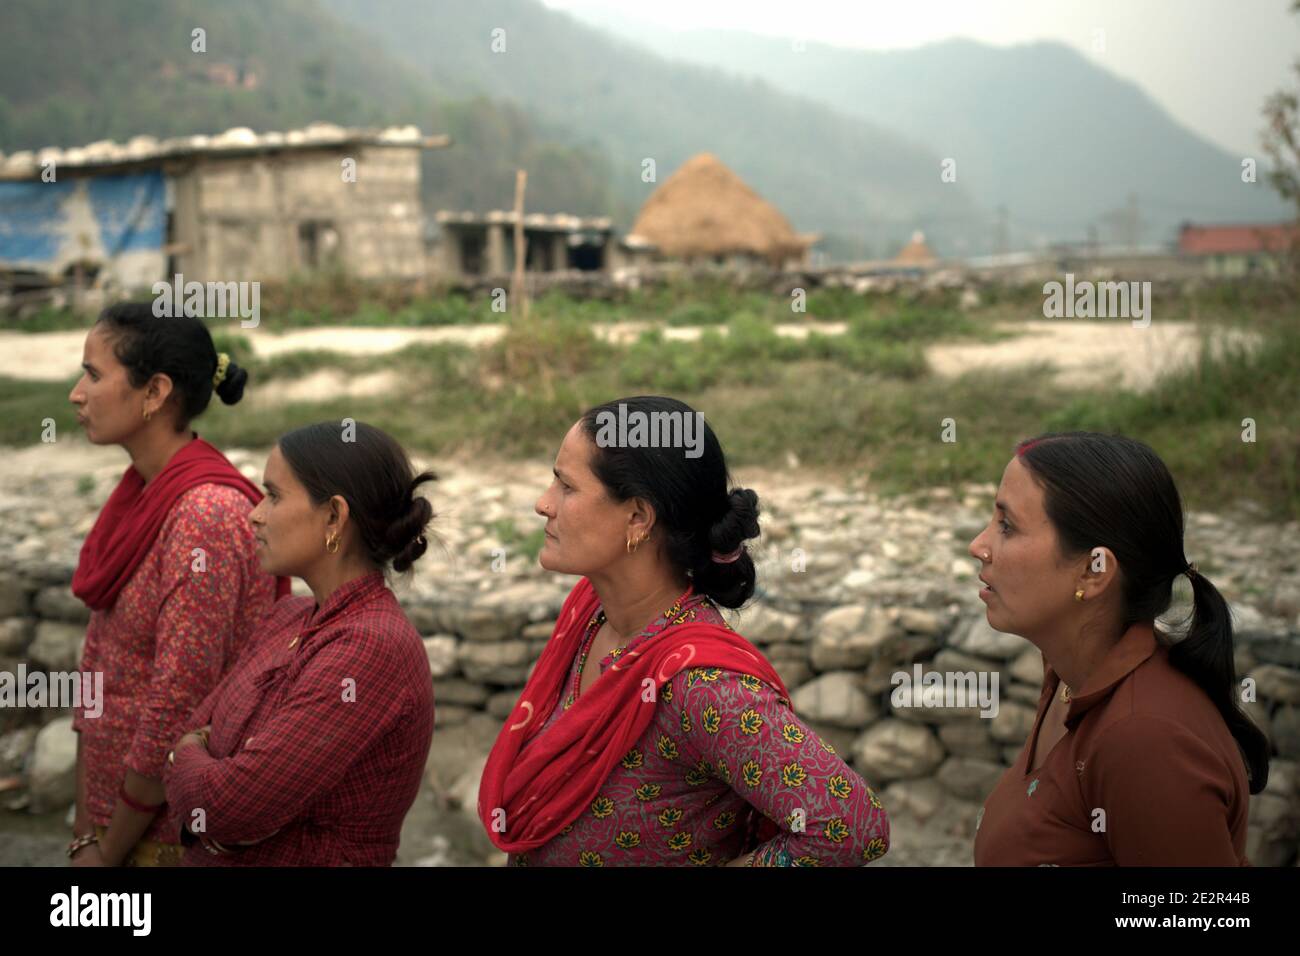 Retrato de mujeres, aldeanos de Khahare, que están de pie cerca de un muro de gaviones en el lado de la llanura aluvial de Harpan Khola en el distrito de Kaski, Gandaki, Nepal. Estas mujeres fueron las sobrevivientes de inundaciones y deslizamientos de tierra causados por lluvias torrenciales en la zona de Bhaudare Tamagi, pocos meses después de los terremotos de 2015 (abril-mayo de 2015) en Nepal. Foto de stock